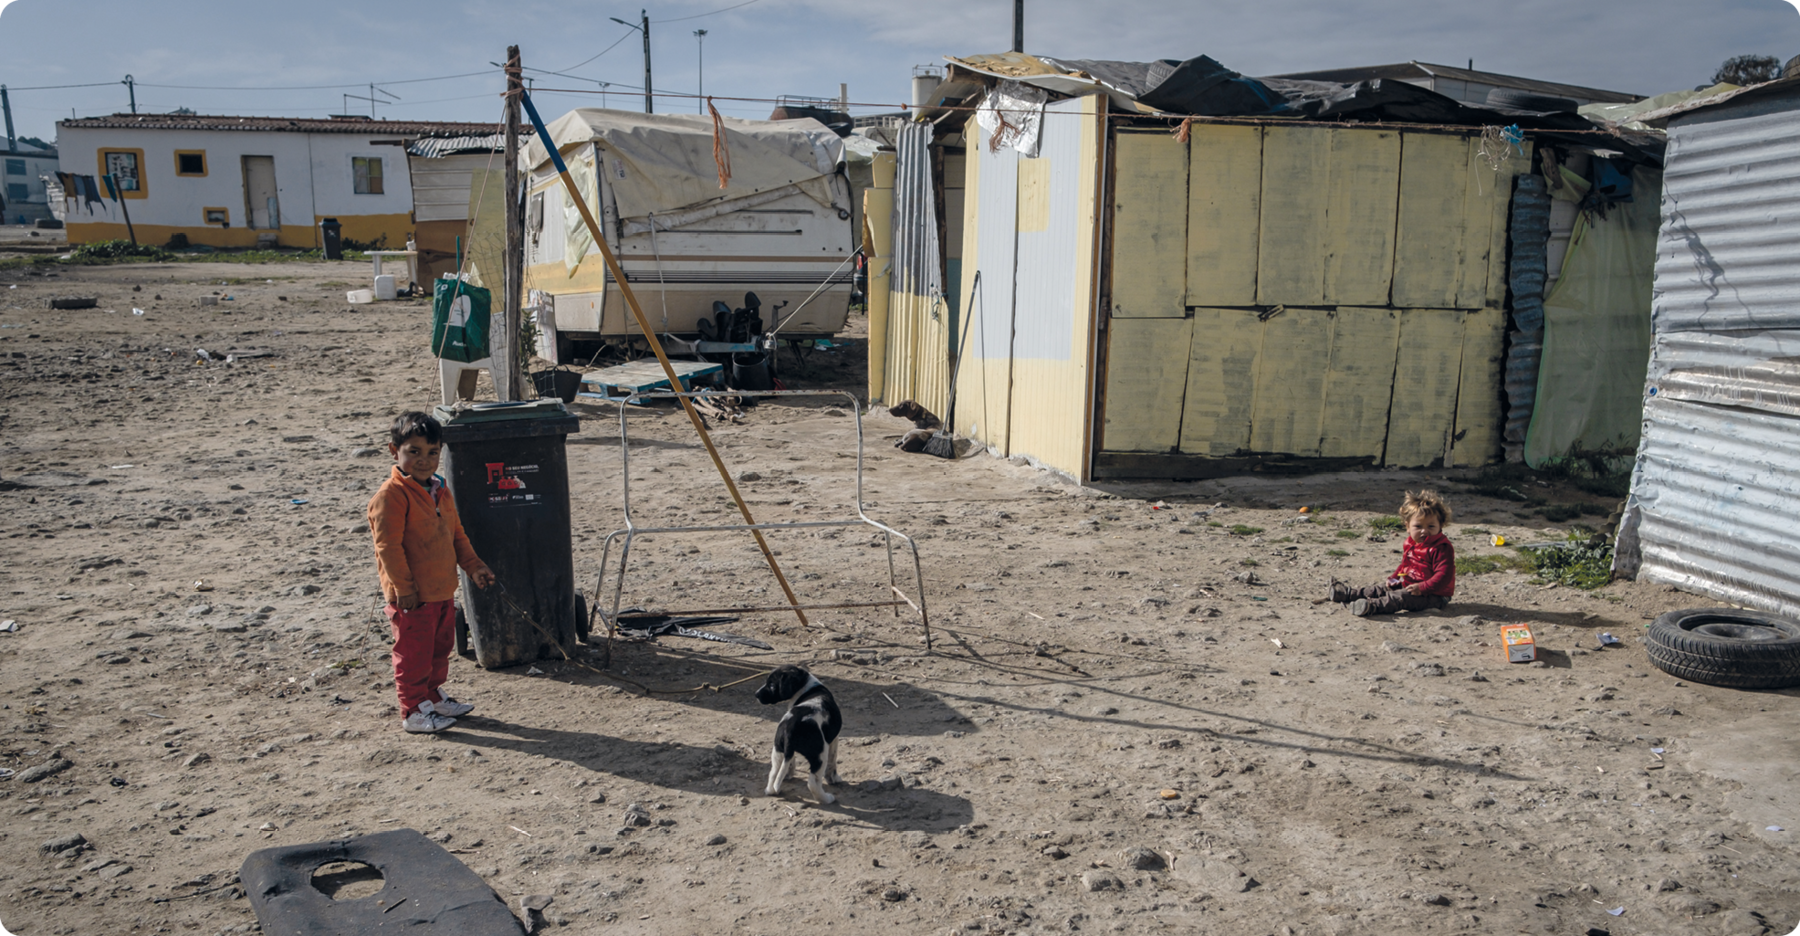 Fotografia. Barracos de tábuas em uma área de terra, ao fundo há dois trailers home. Em frente, uma criança em pé ao lado de um cachorro e outra criança sentada no chão.